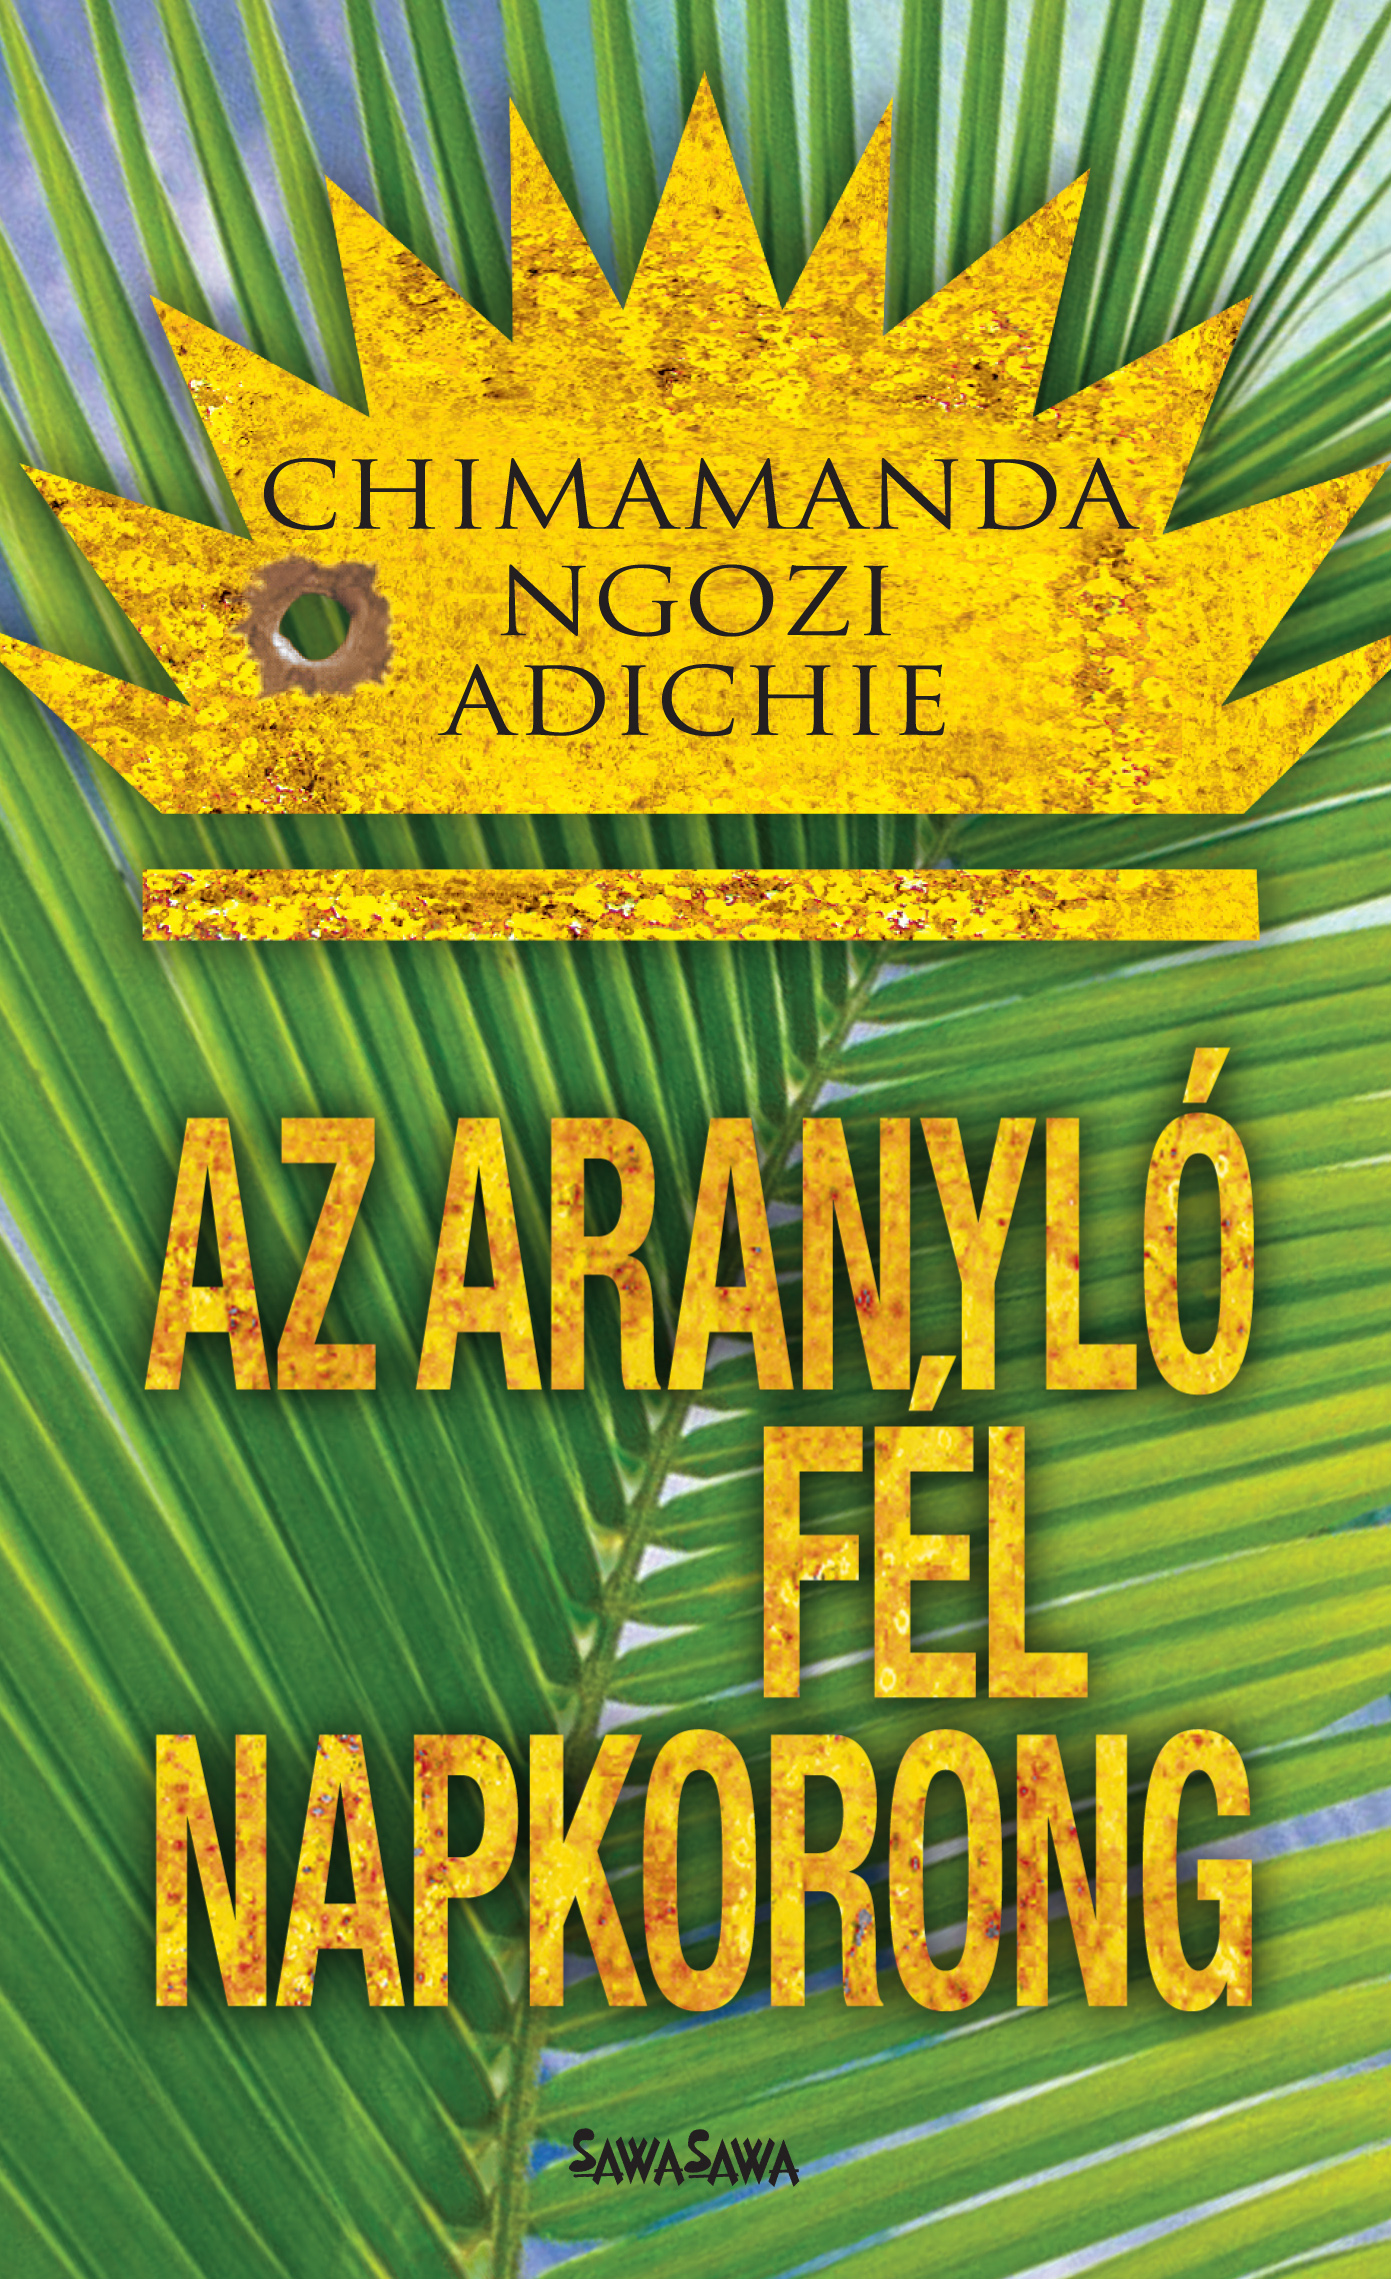 Chimamanda Ngozi Adichie - Az aranyló fél napkorong [eKönyv: epub, mobi]